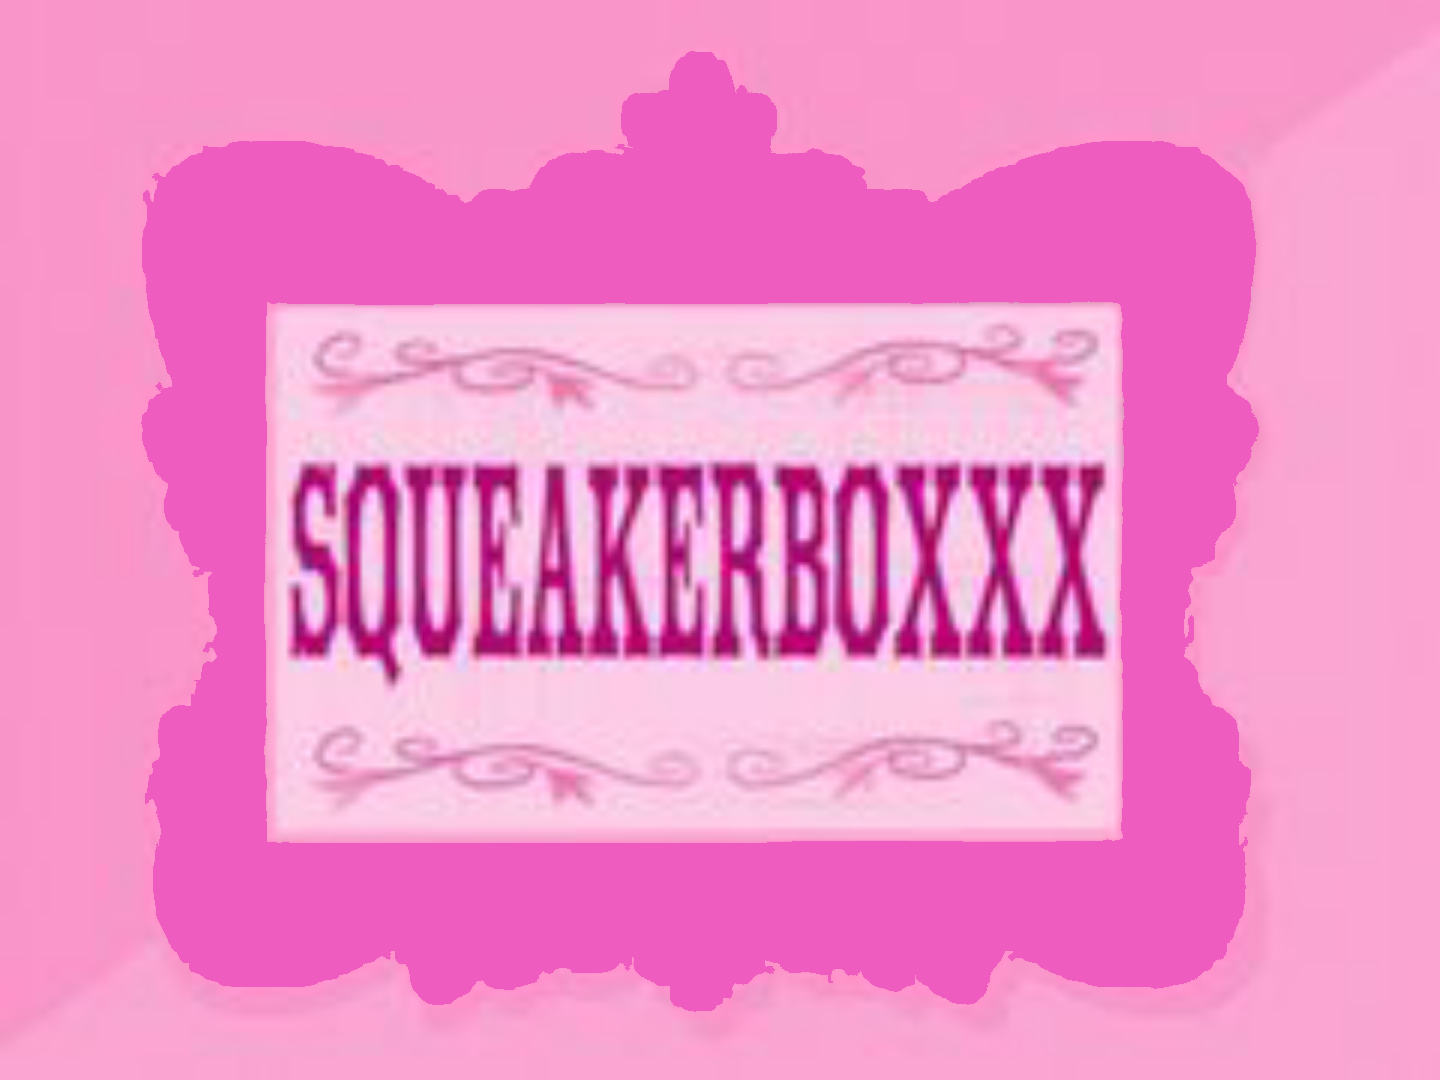 SqueakerBoxxx Imagïnatïon Companïons A Fosters Home For